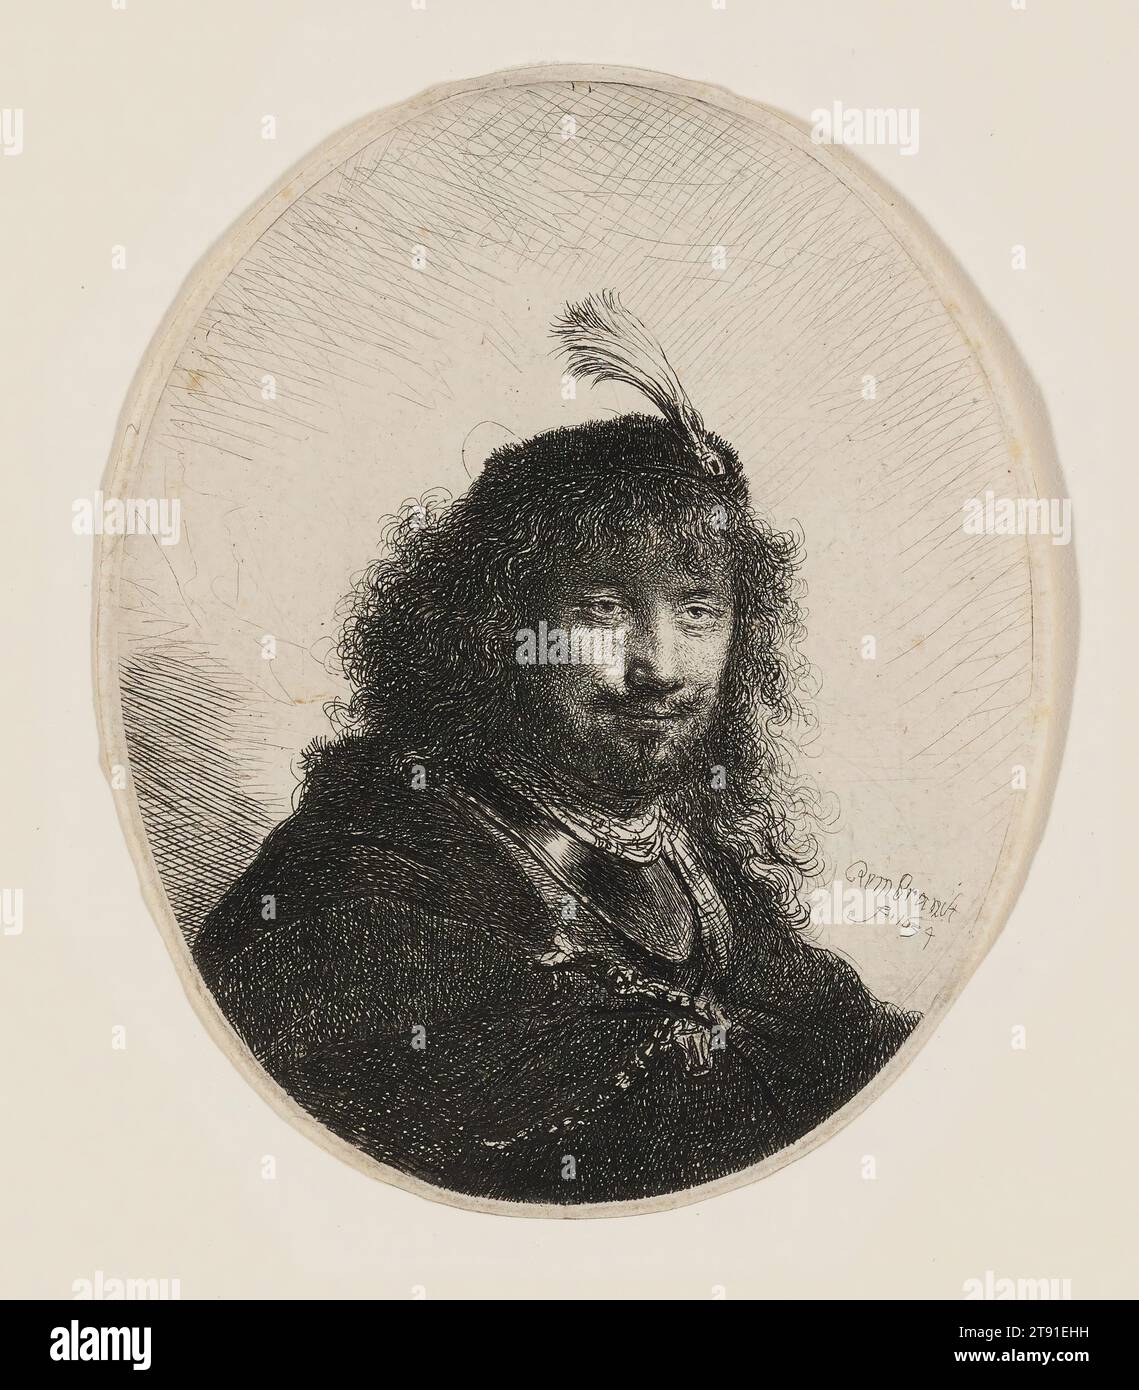 Rembrandt avec chapeau plumé et Sabre abaissé, 1634, Rembrandt Harmensz. Van Rijn, néerlandais, 1606–1669, 5 1/8 x 4 1/4 po. (13 x 10,8 cm) (plaque, ovale), gravure et gravure, pays-Bas, 17e siècle, plusieurs choses auraient pu inspirer le vaste programme d'autoportrait de Rembrandt. Il y avait l'envie d'auto-promotion, la nécessité de satisfaire les collectionneurs qui voulaient des images de l'artiste célèbre, et l'intérêt pour la découverte de soi-l'idée néerlandaise du XVIIe siècle que l'on pouvait façonner son caractère en essayant différents «moi». Banque D'Images